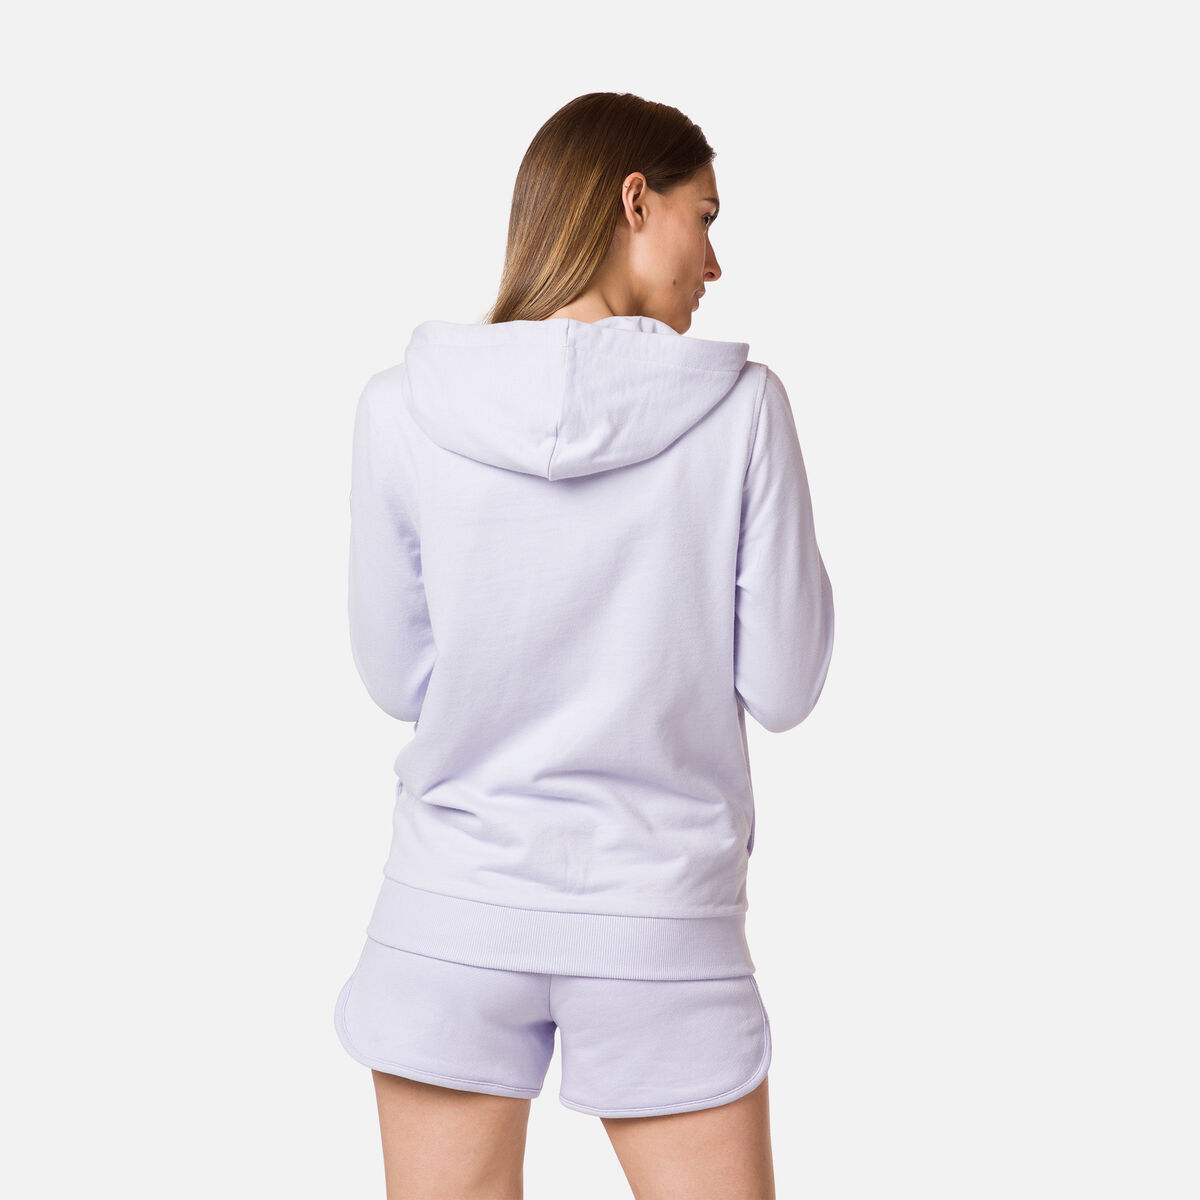 Damensweatshirt aus Baumwolle mit Kapuze, Logo und durchgehendem Reißverschluss